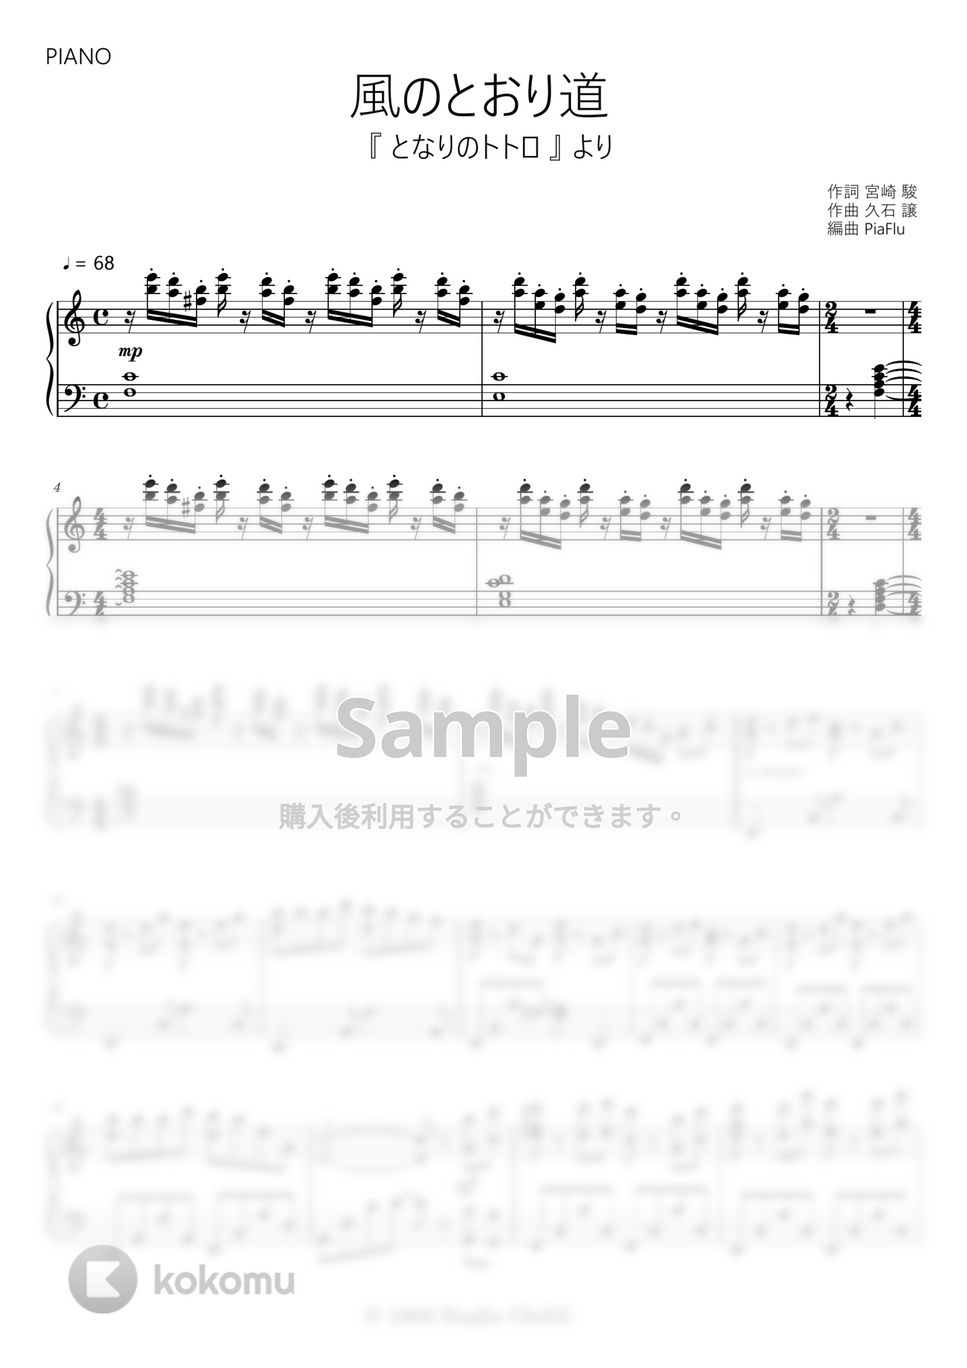 となりのトトロ - 風のとおり道 (ピアノ) by PiaFlu